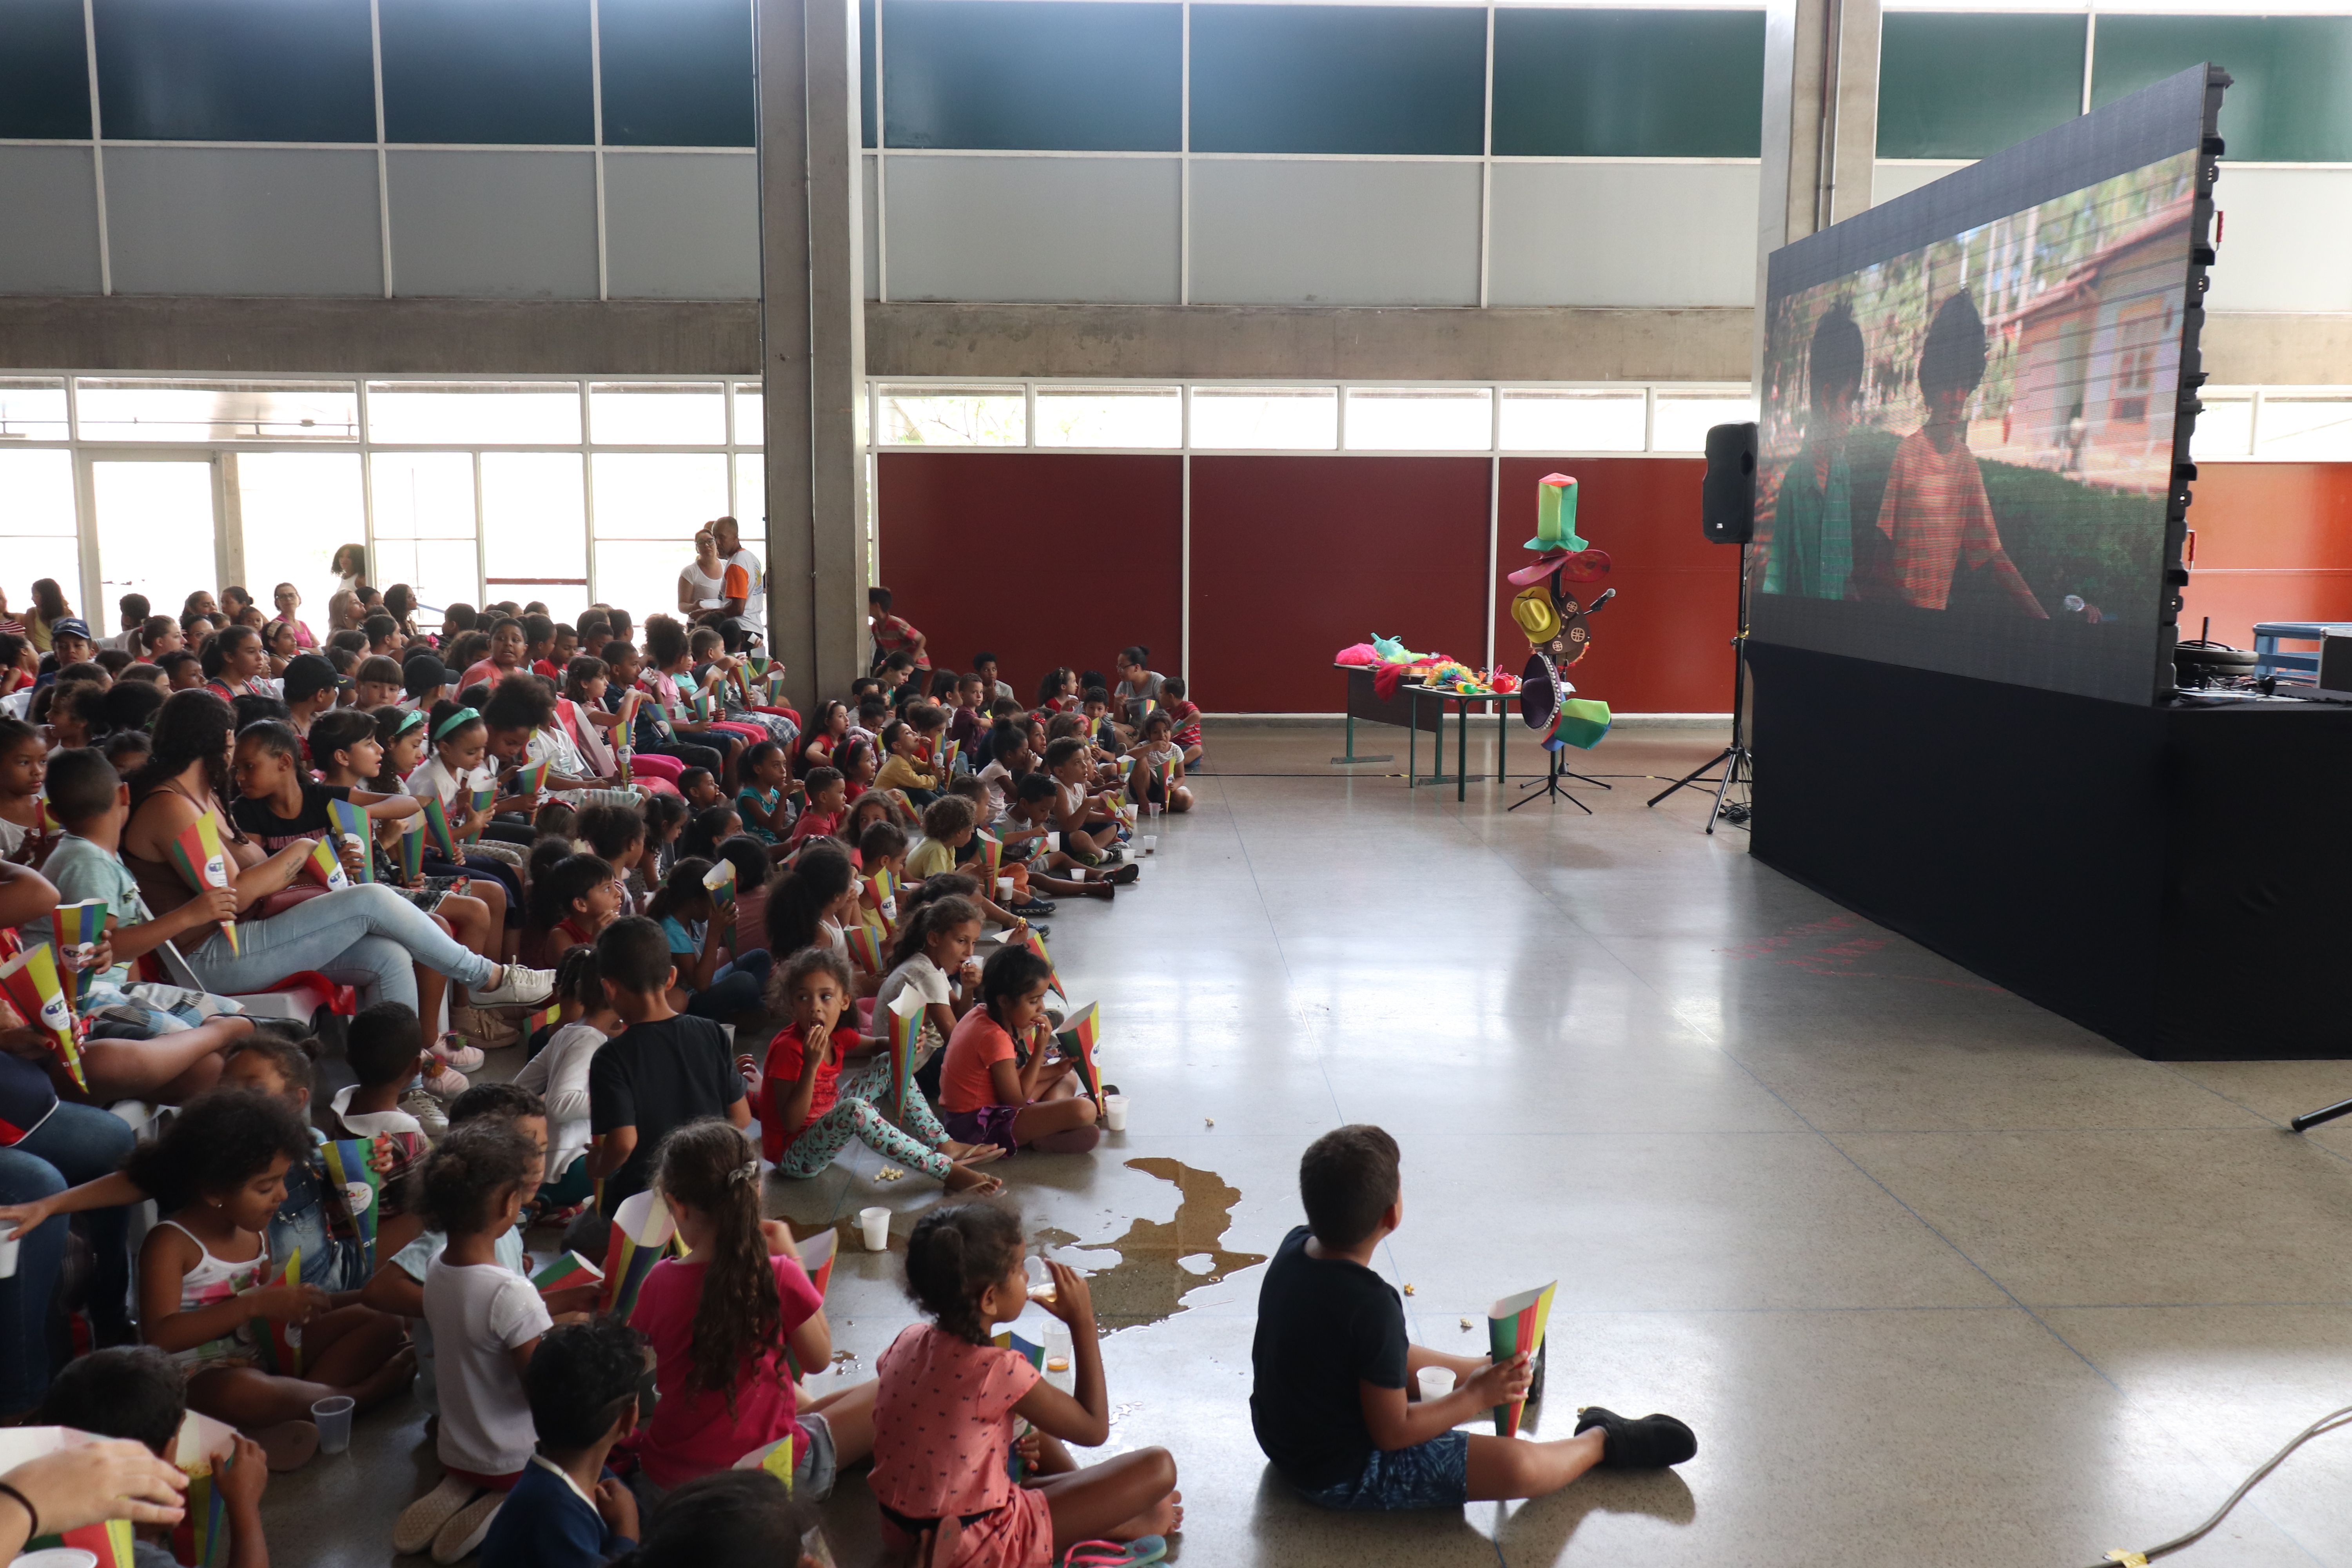 Do lado esquerdo uma plateia repleta de crianças sentadas comendo pipoca e do lado direito um telão exibindo filme” Turma da Mônica: Laços”.